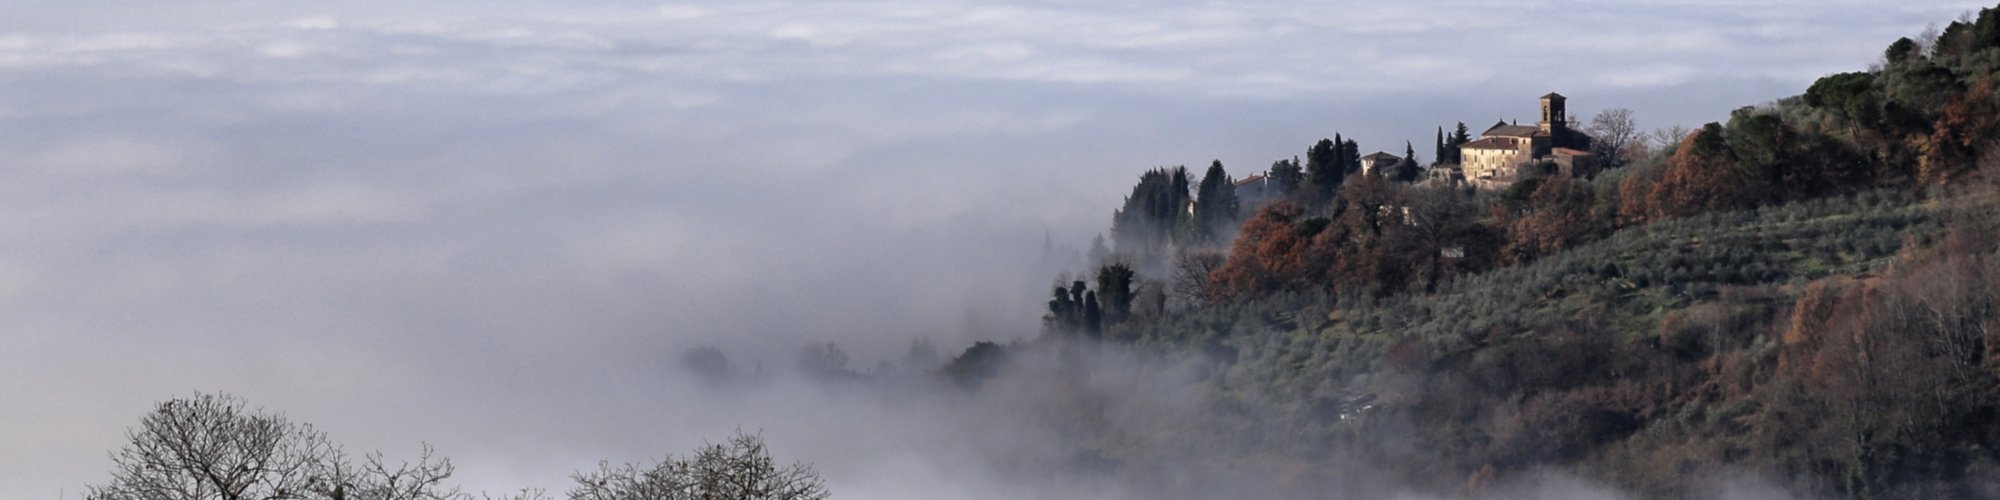 Panorama de la Ronta con la niebla